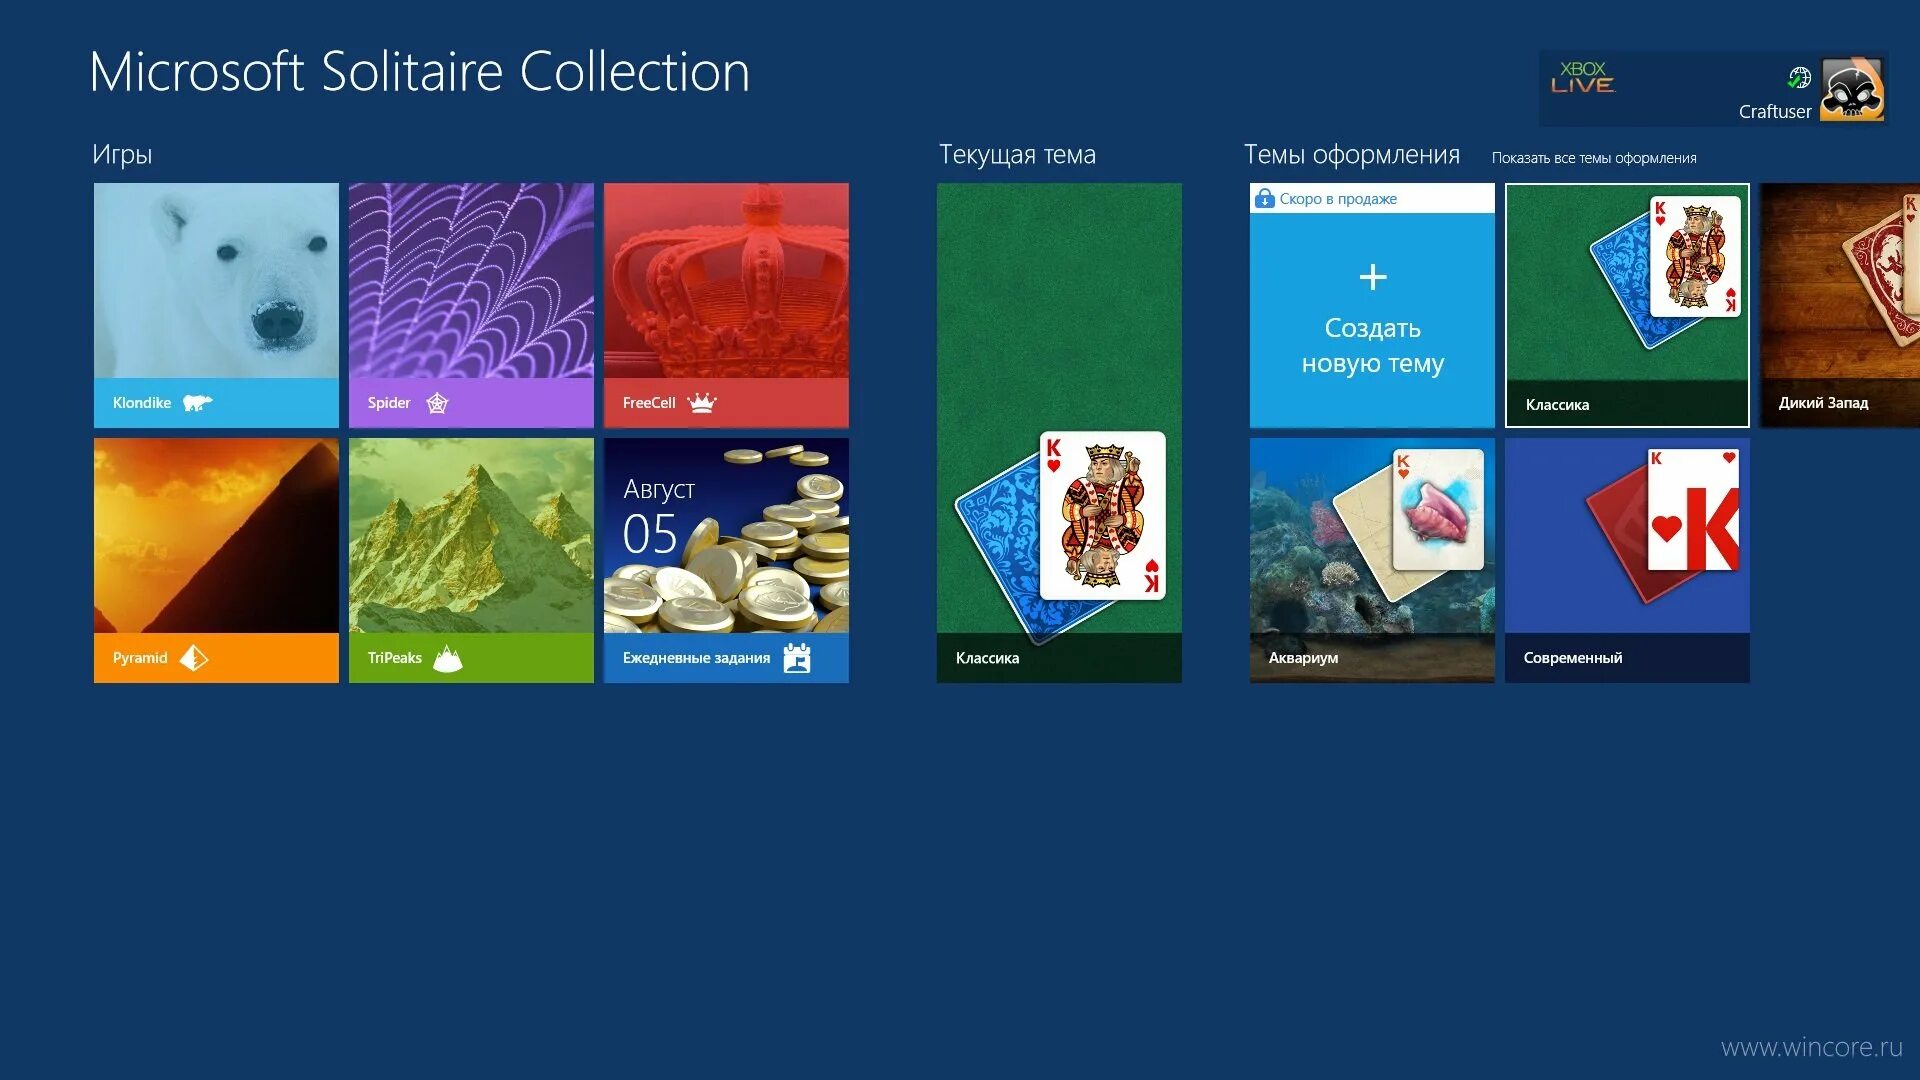 Windows solitaire collection. Игры Microsoft Solitaire collection. Microsoft Solitaire collection Windows 8 "без магазина". Microsoft Солитер коллекция. Солитер коллекшн.